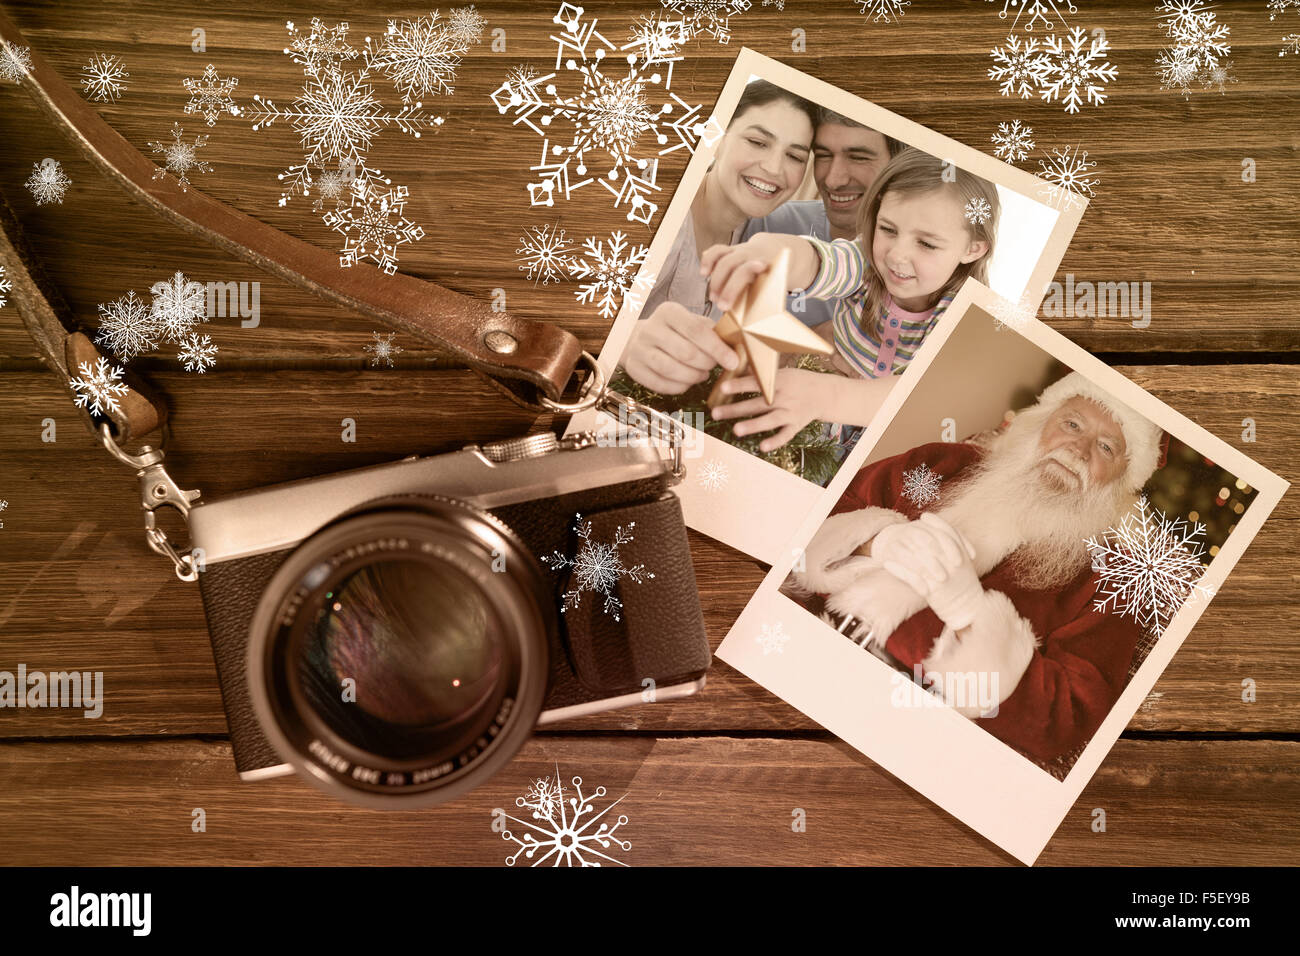 Imagen compuesta de Navidad en familia retrato Foto de stock